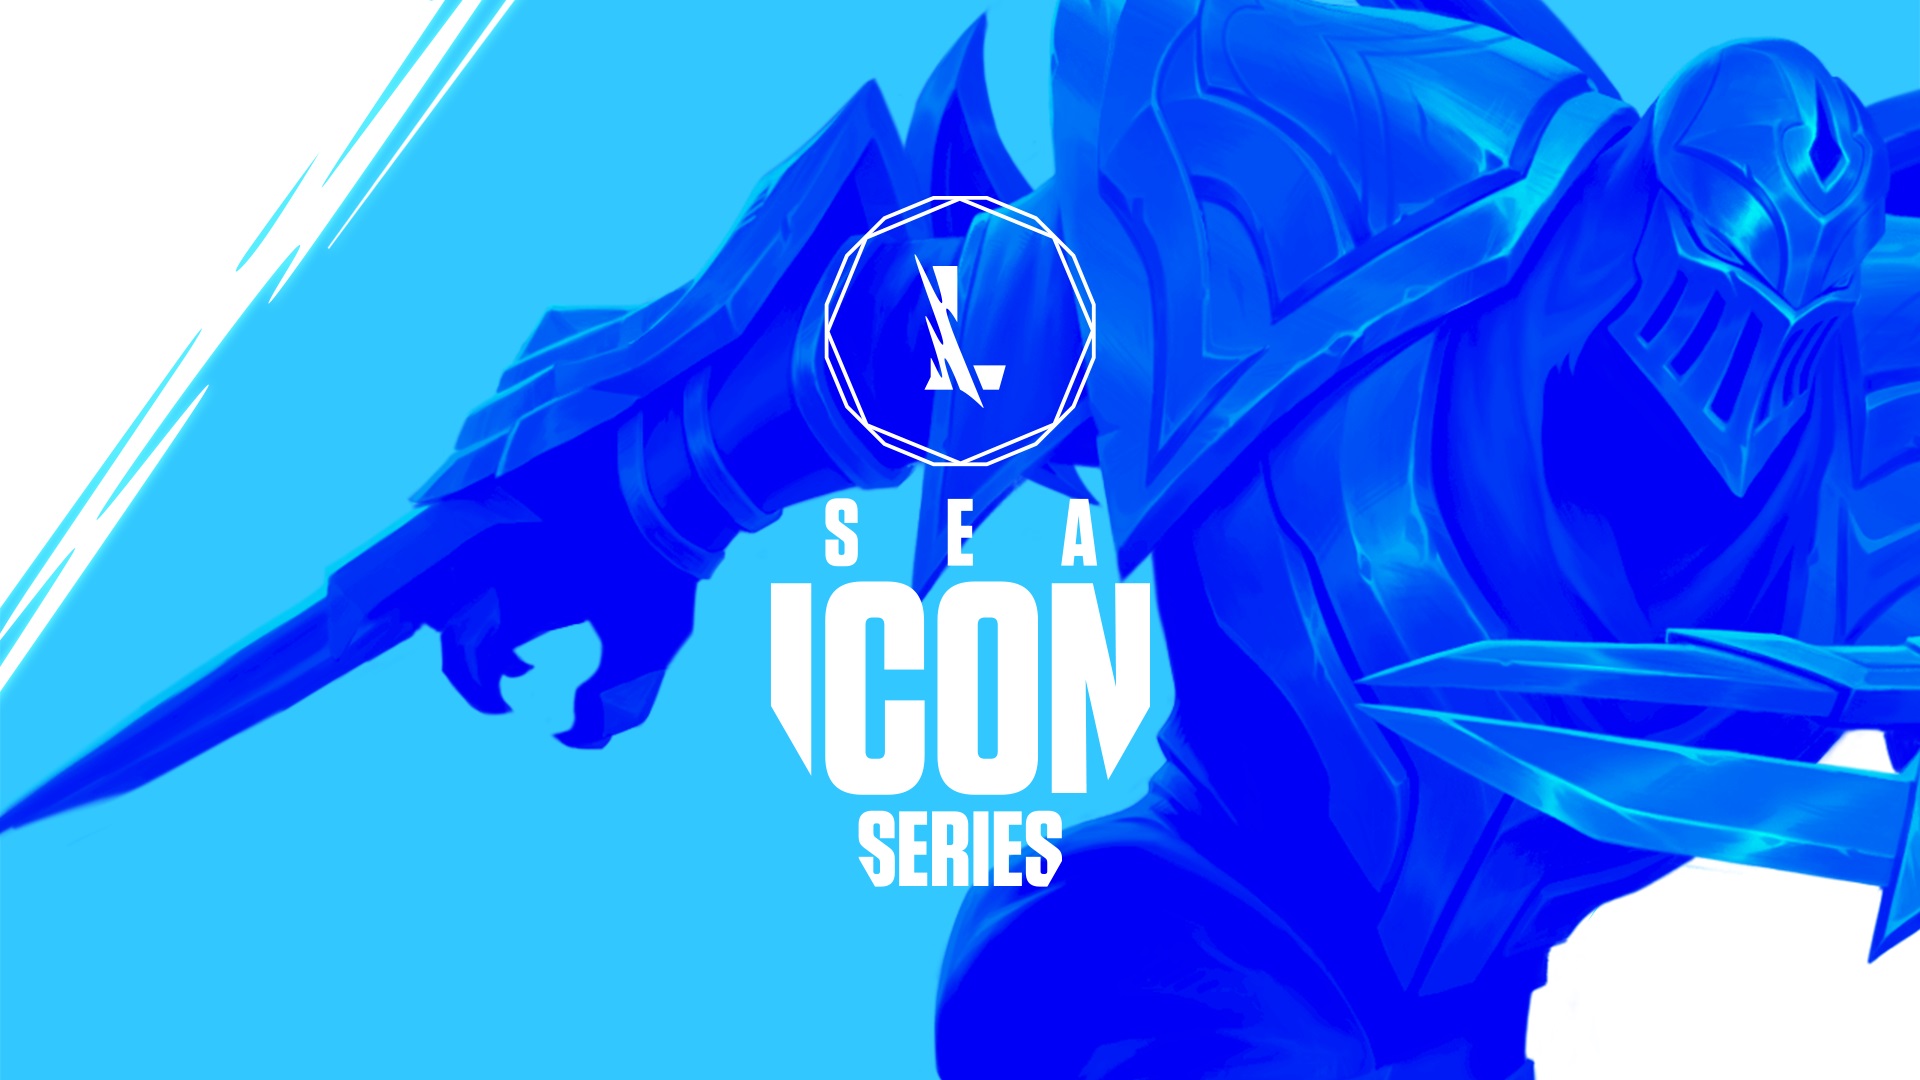 Resmi, Riot Games Umumkan Tanggal Wild Rift Southeast Asia (SEA) Icon Series Summer Season